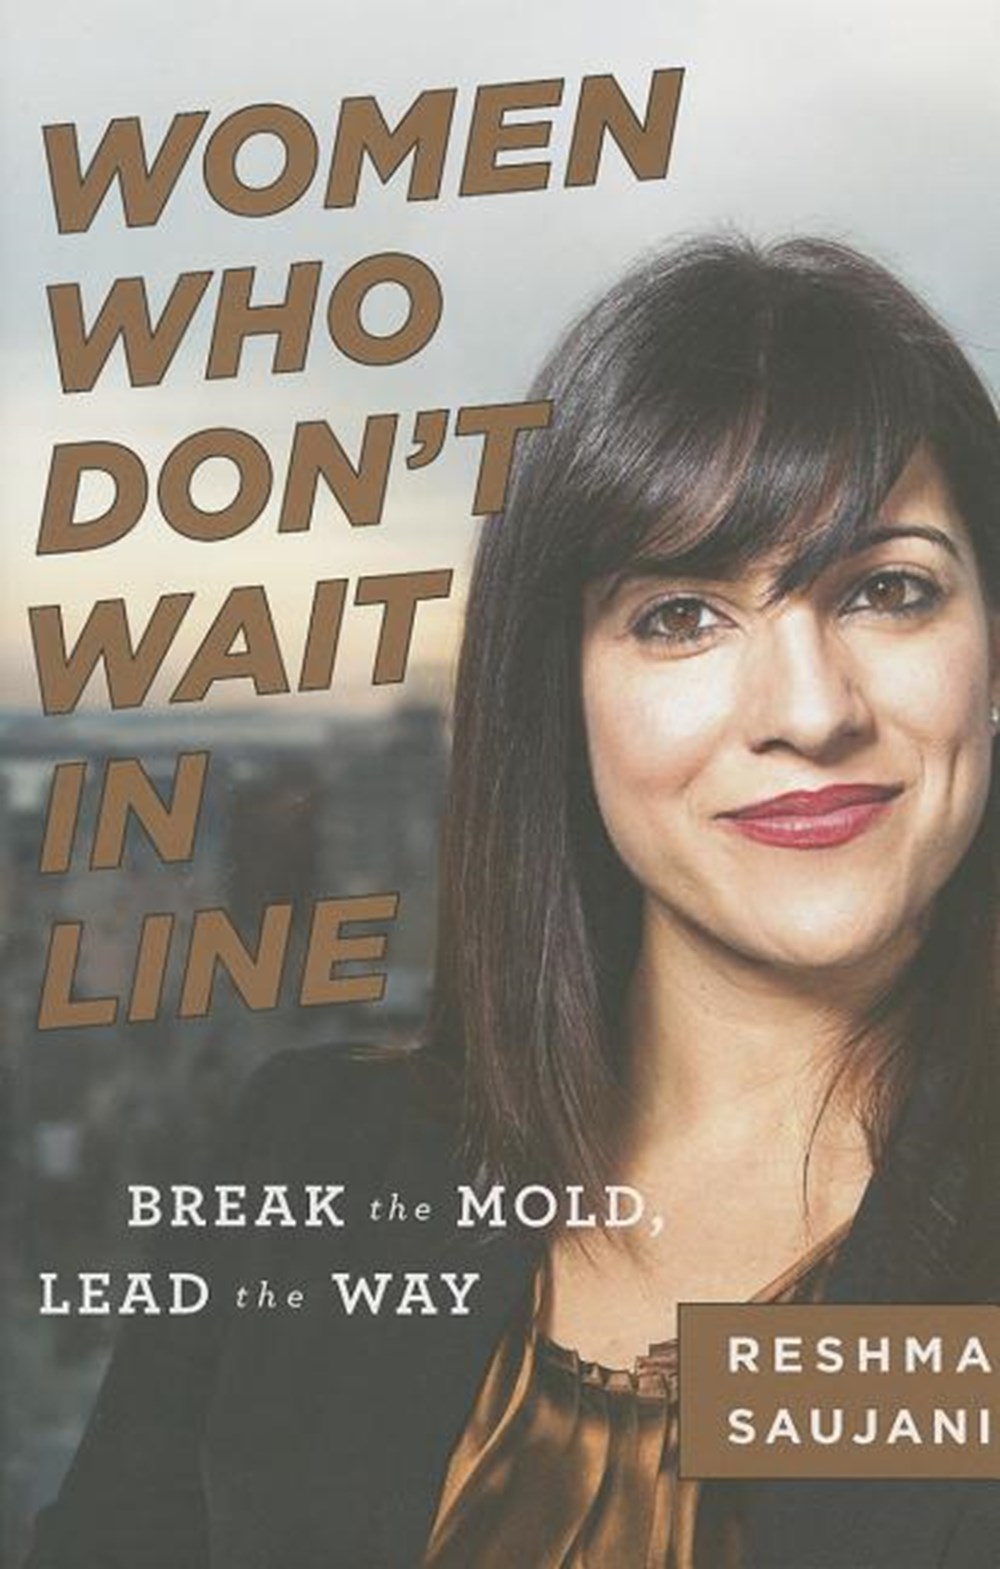 Women Who Don't Wait in Line Break the Mold, Lead the Way